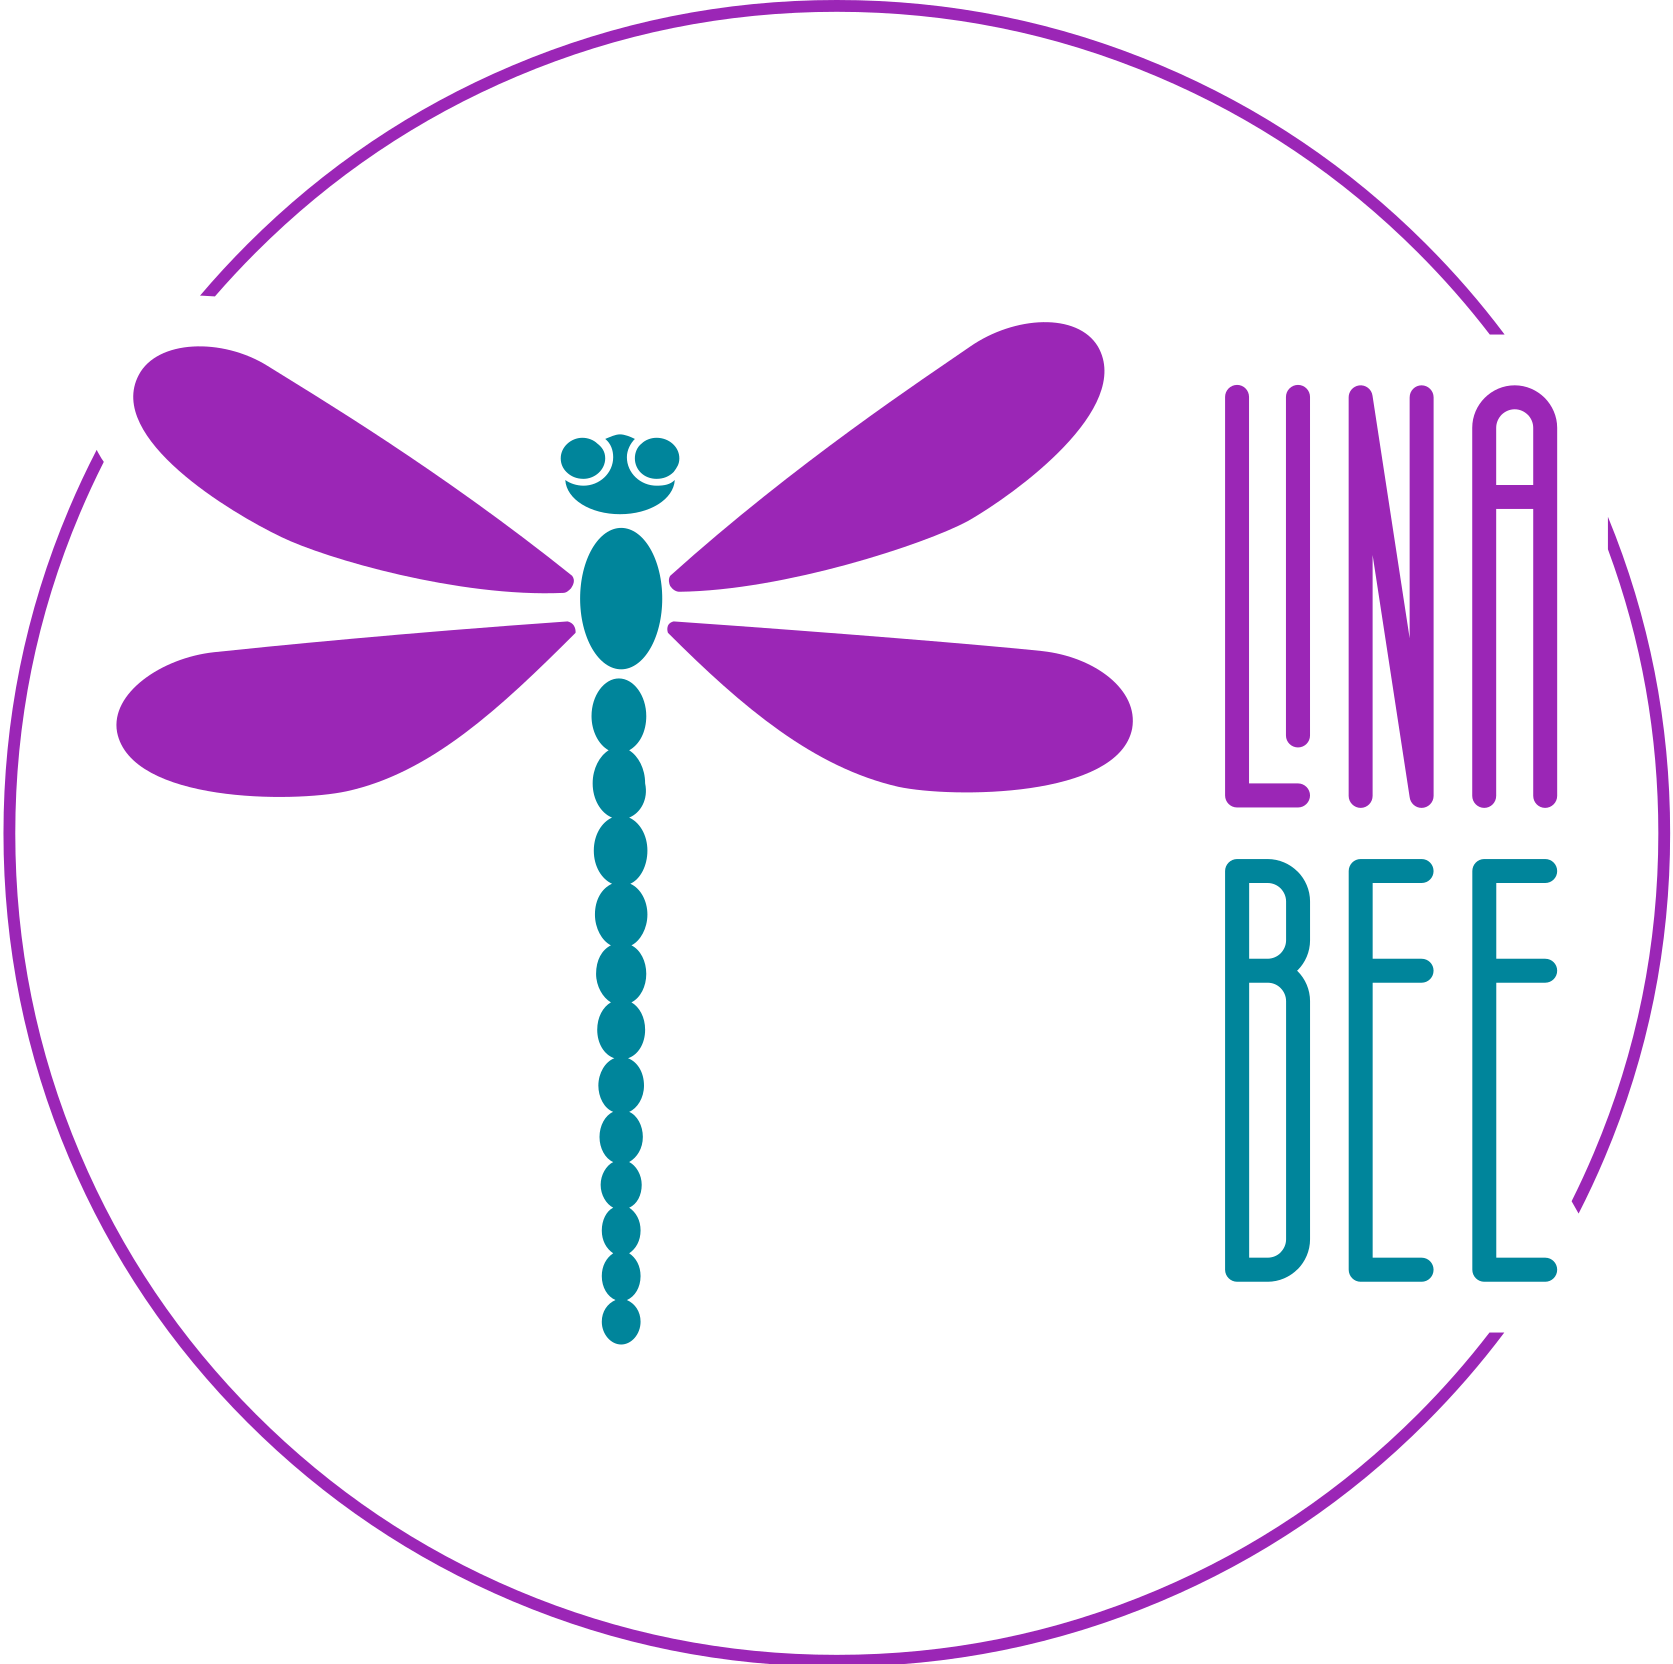 Lina bee logo